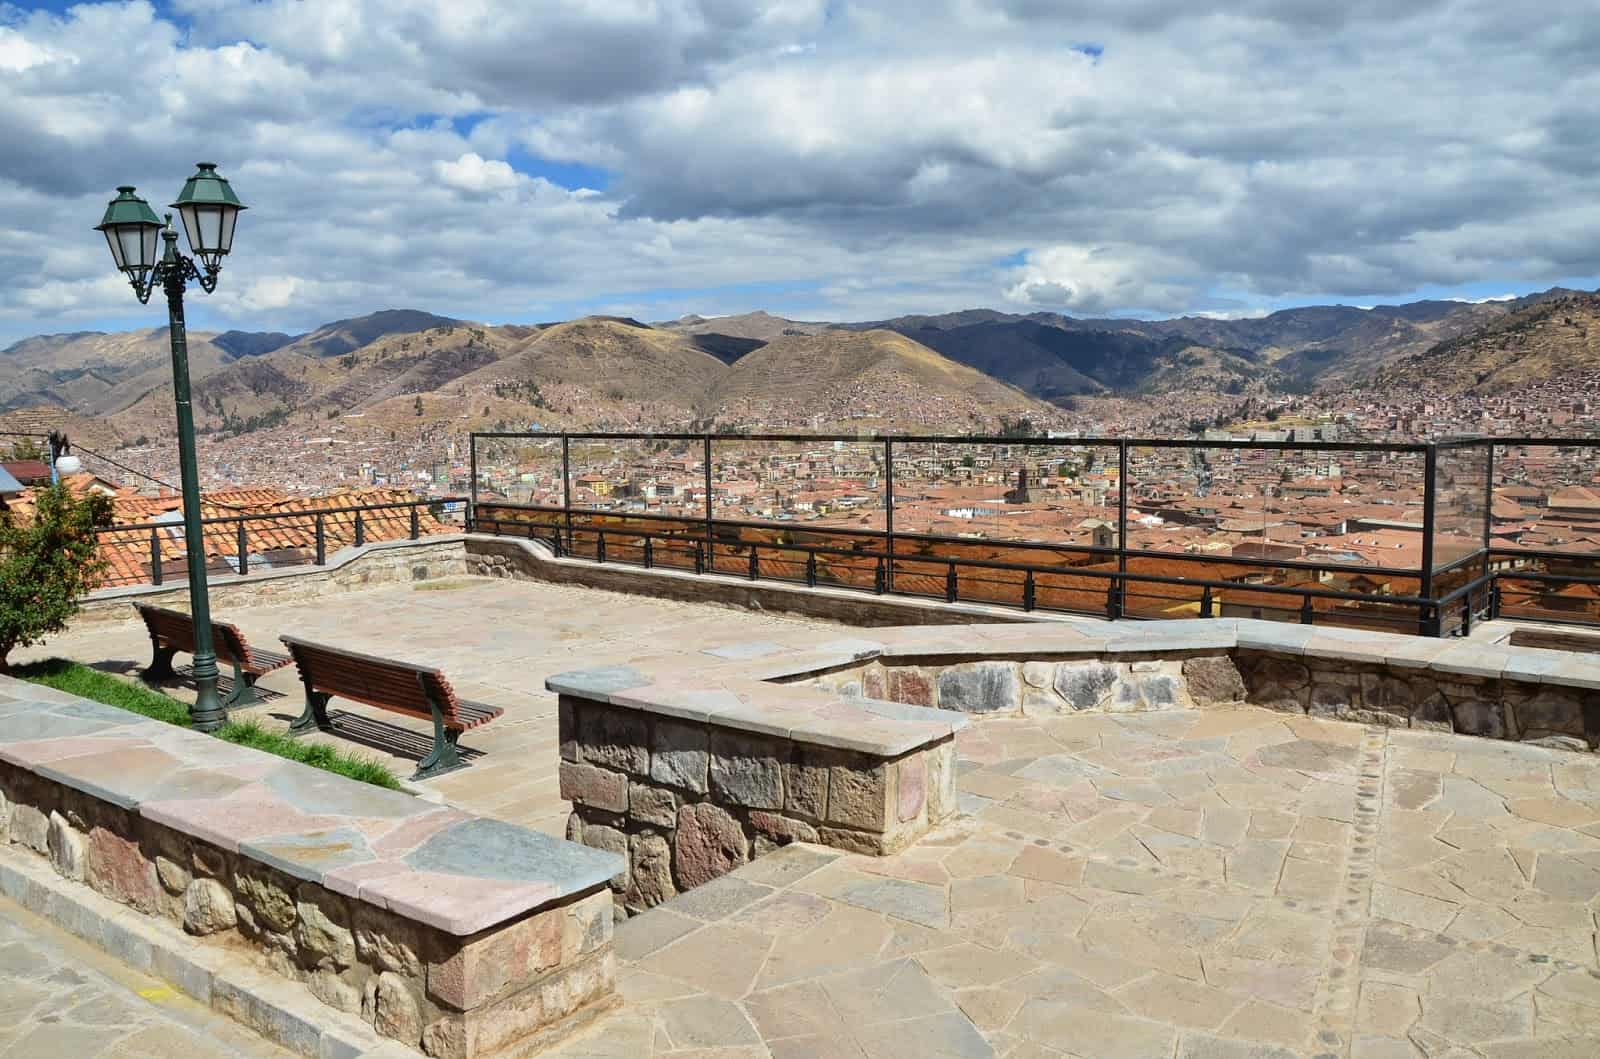 Mirador de San Blas in San Blas, Cusco, Peru